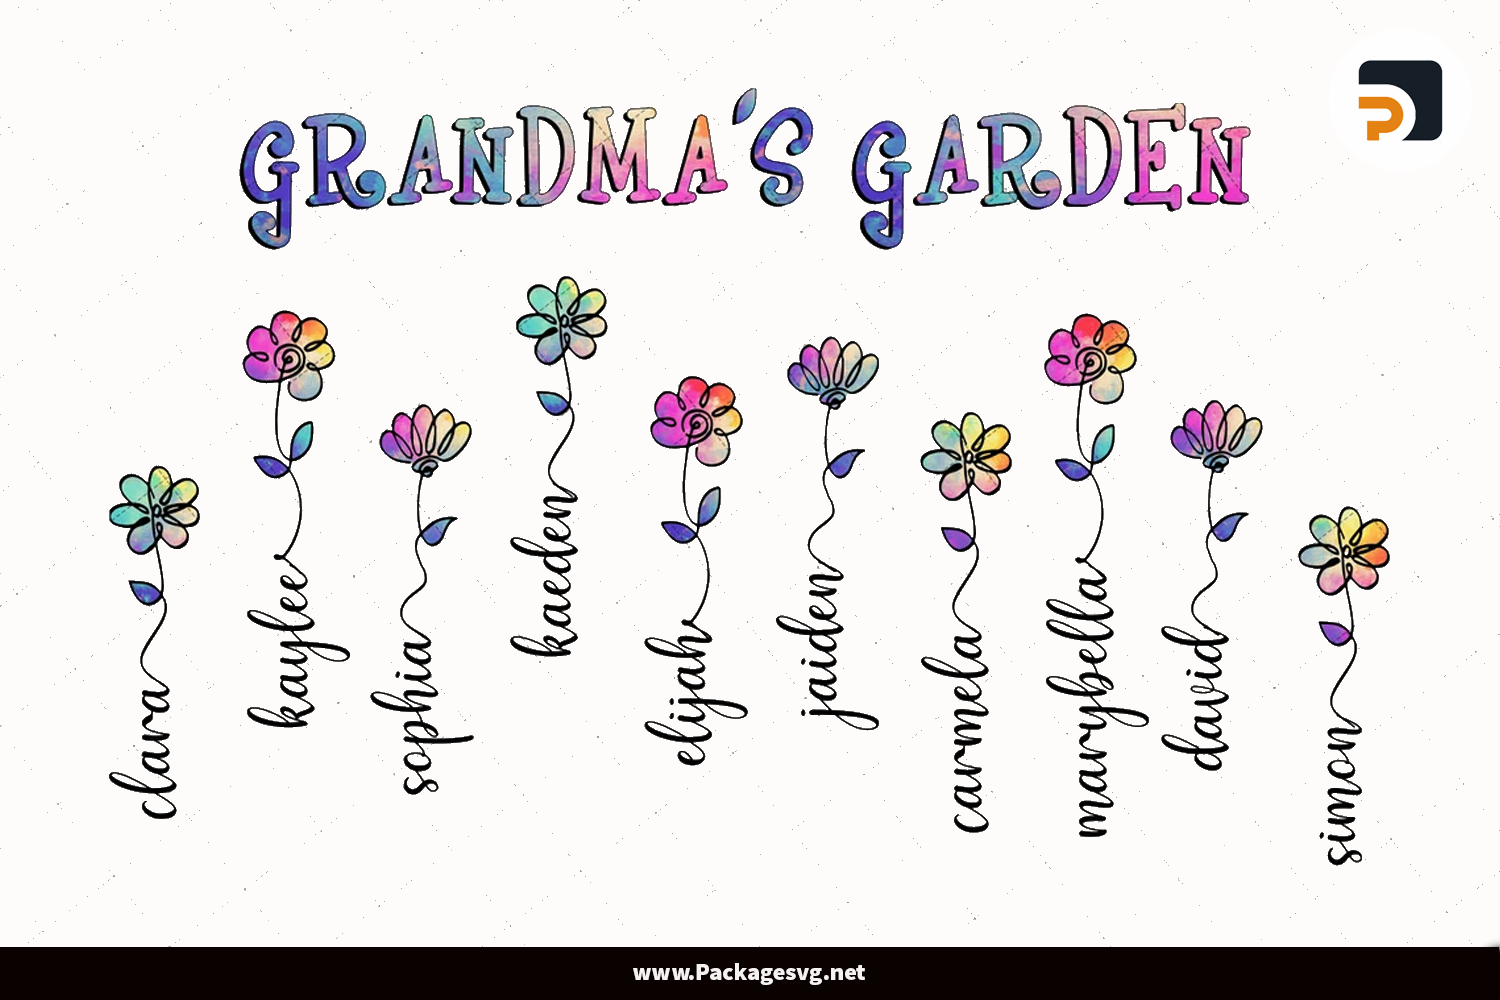 Grandma's Garden PNG